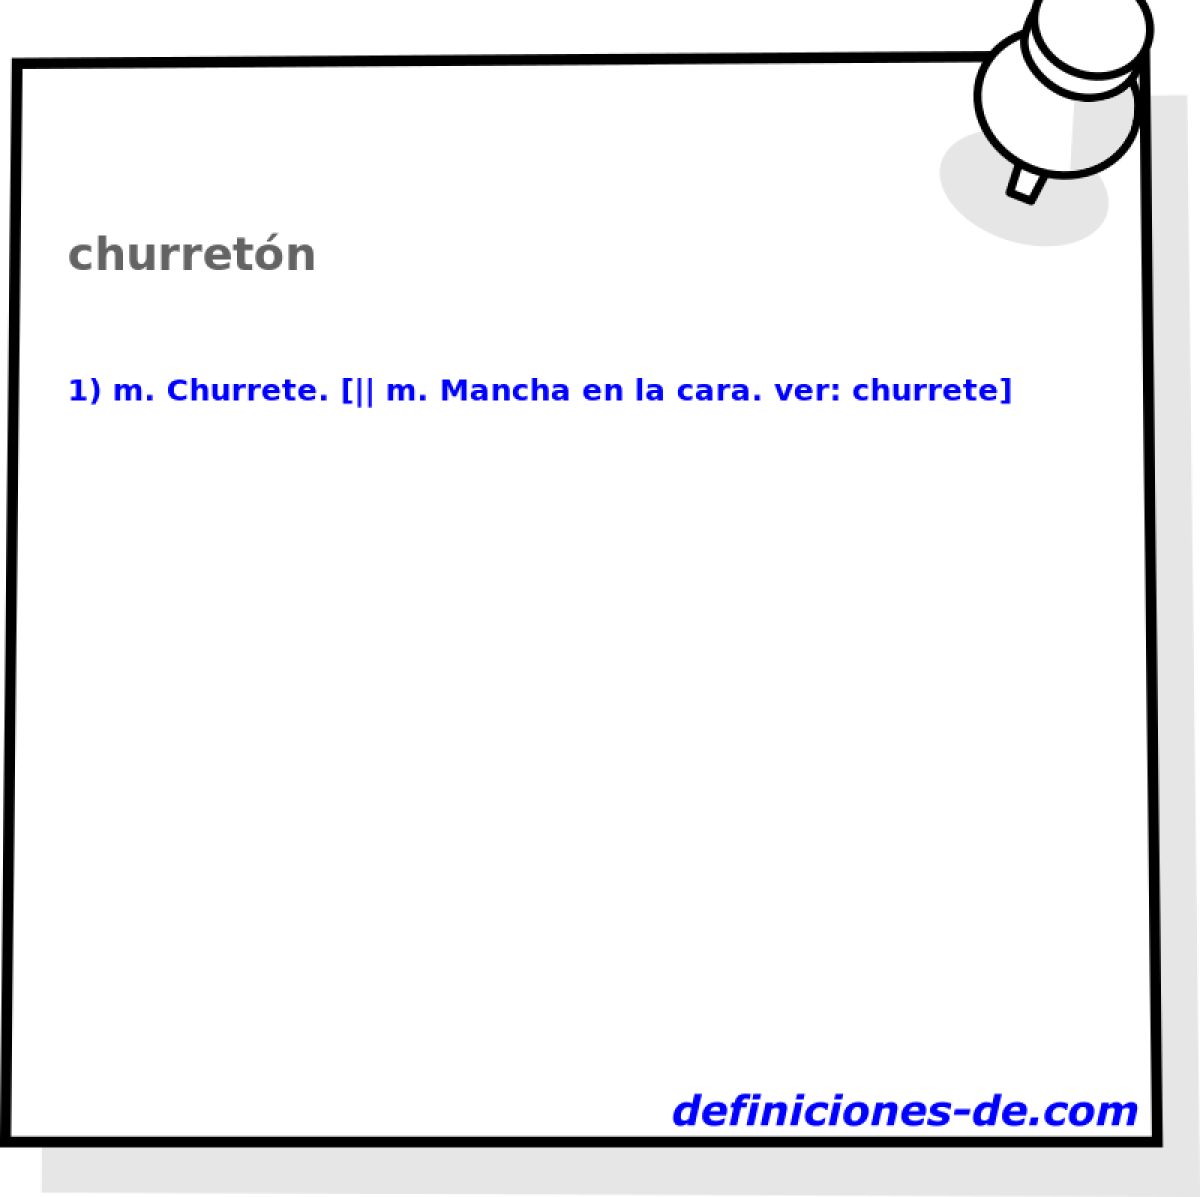 churretn 